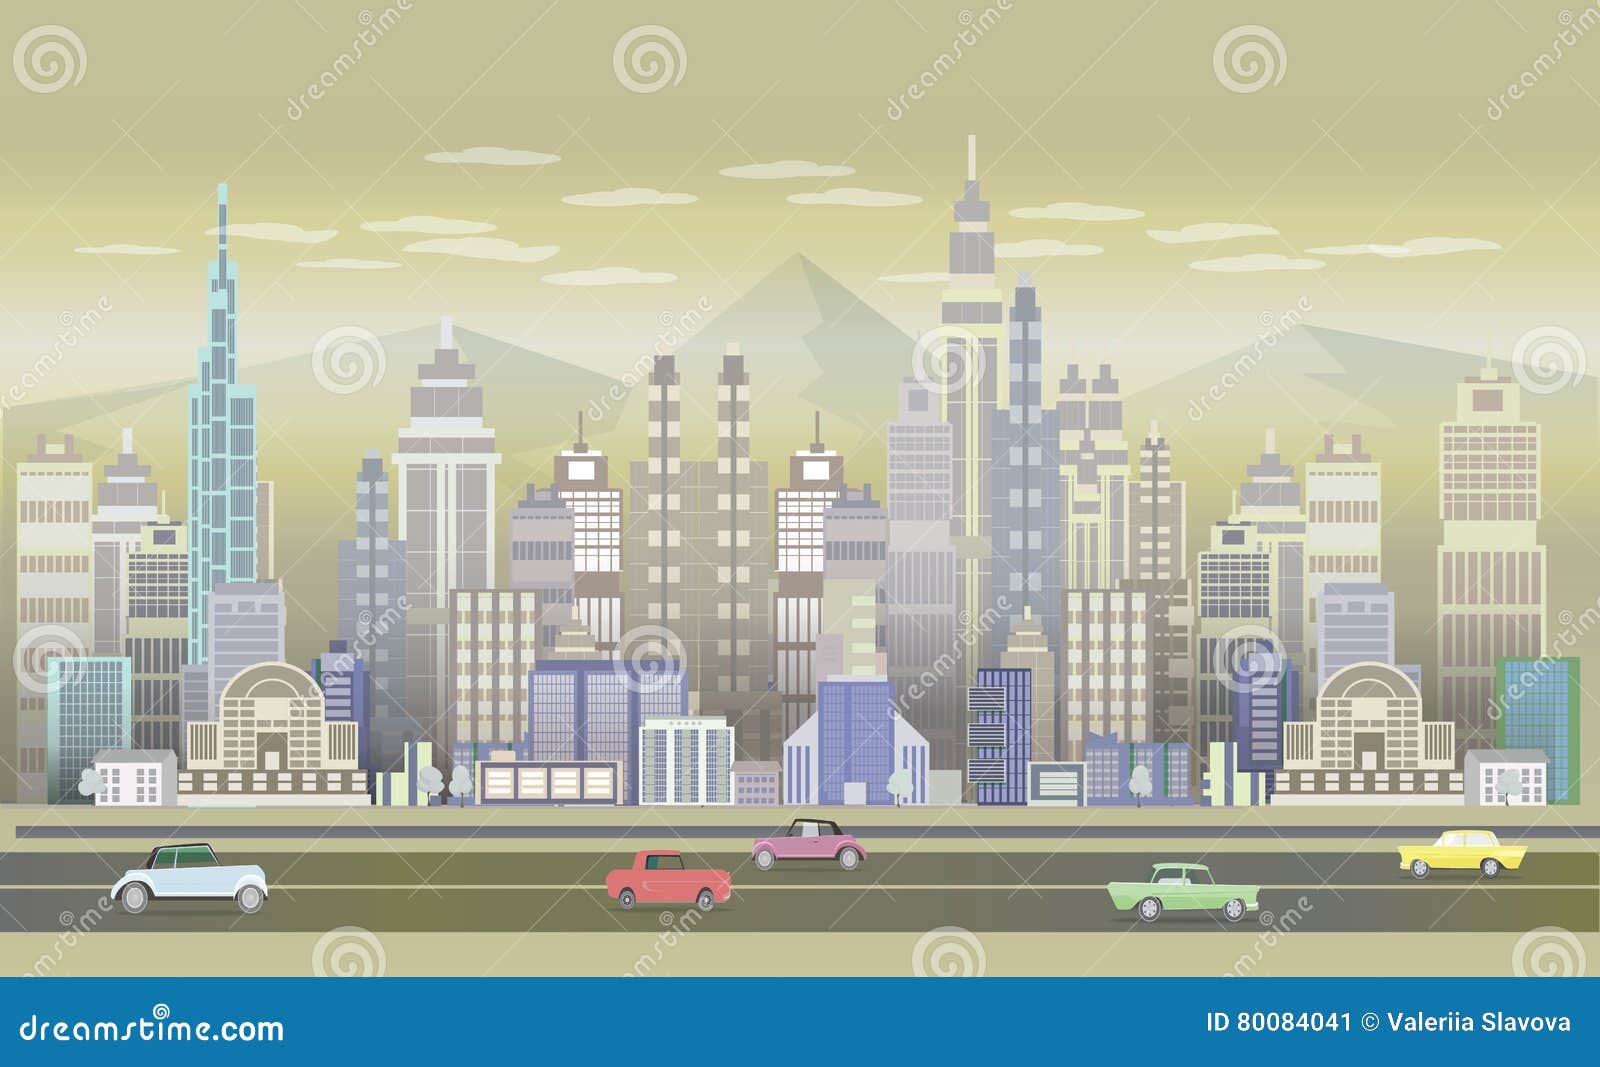 Trải nghiệm một thành phố thu nhỏ nhưng đầy đủ tính tựa nhưng minh họa trò chơi thành phố 2D. Những hình ảnh quen thuộc nhưng đầy màu sắc sẽ khiến bạn say mê và dành cả ngày để khám phá.